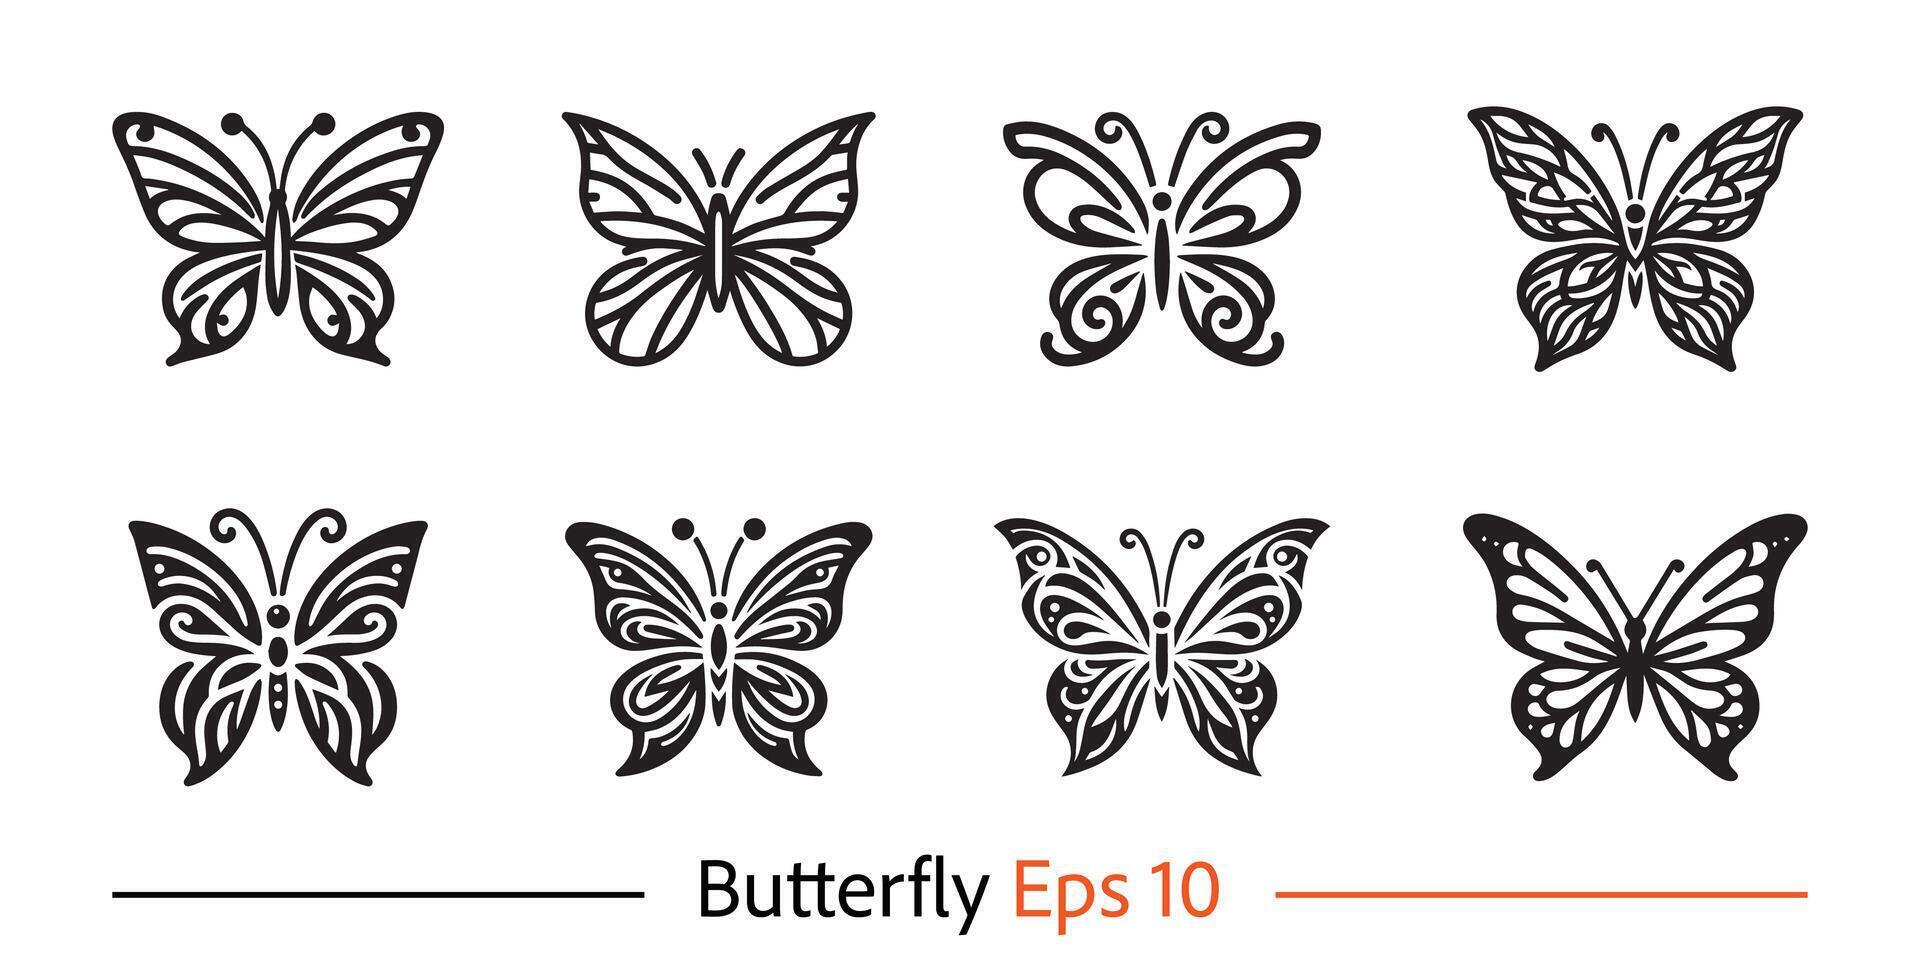 mariposa logo vector conjunto plantilla, mariposa logo vector conjunto elementos, mariposa logo vector conjunto ilustración